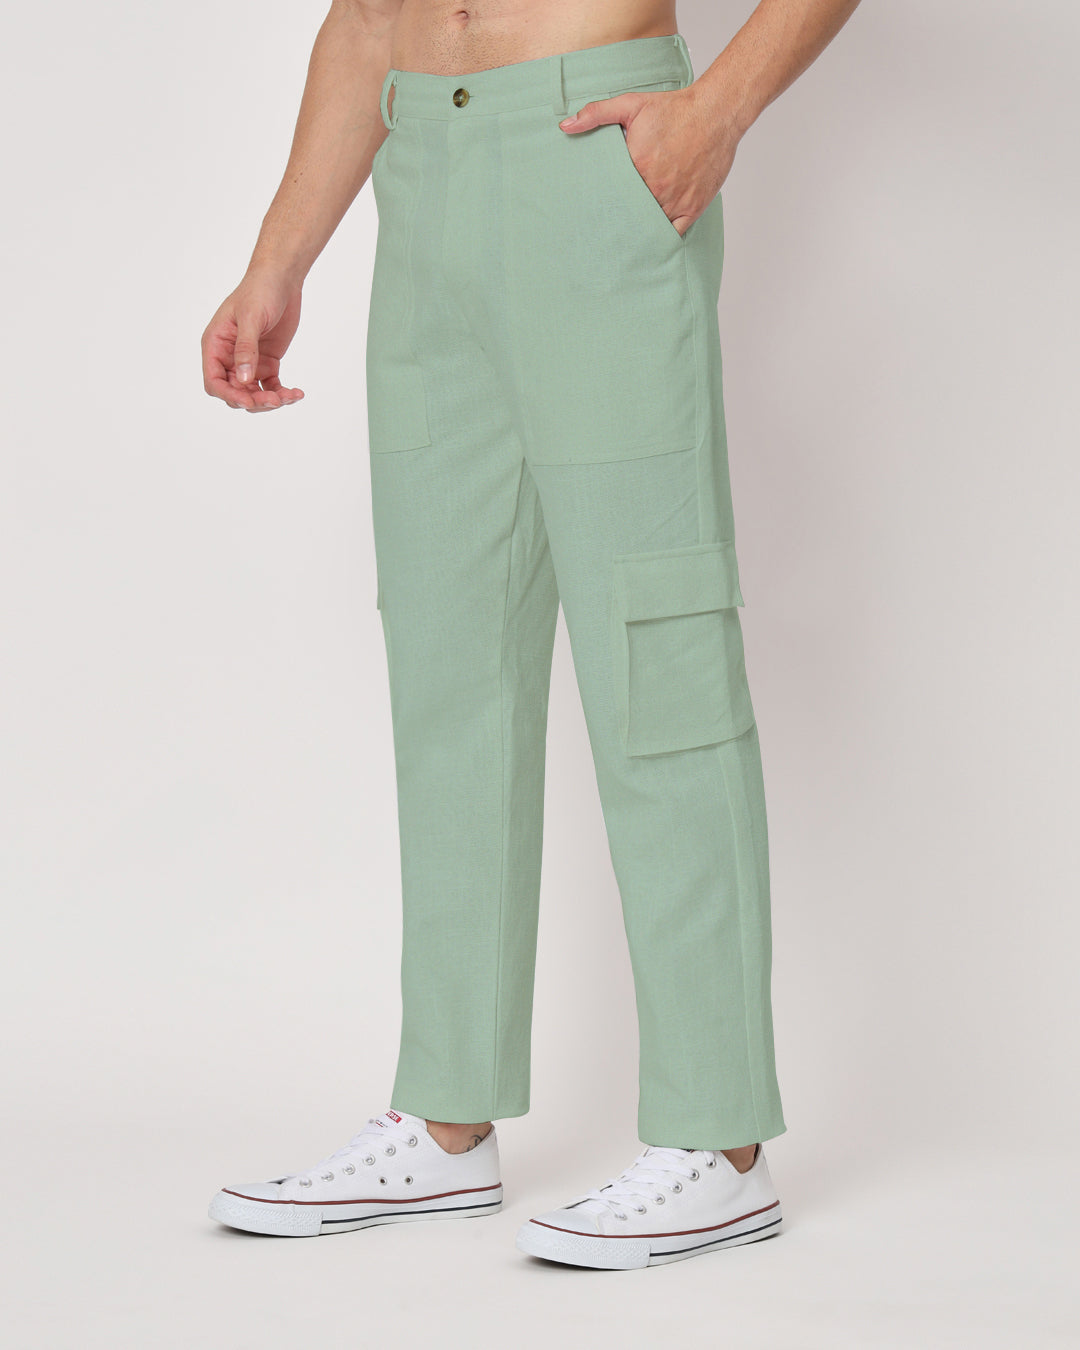 Combo: Function Flex White & Spring Green Men's Pants- Set Of 2